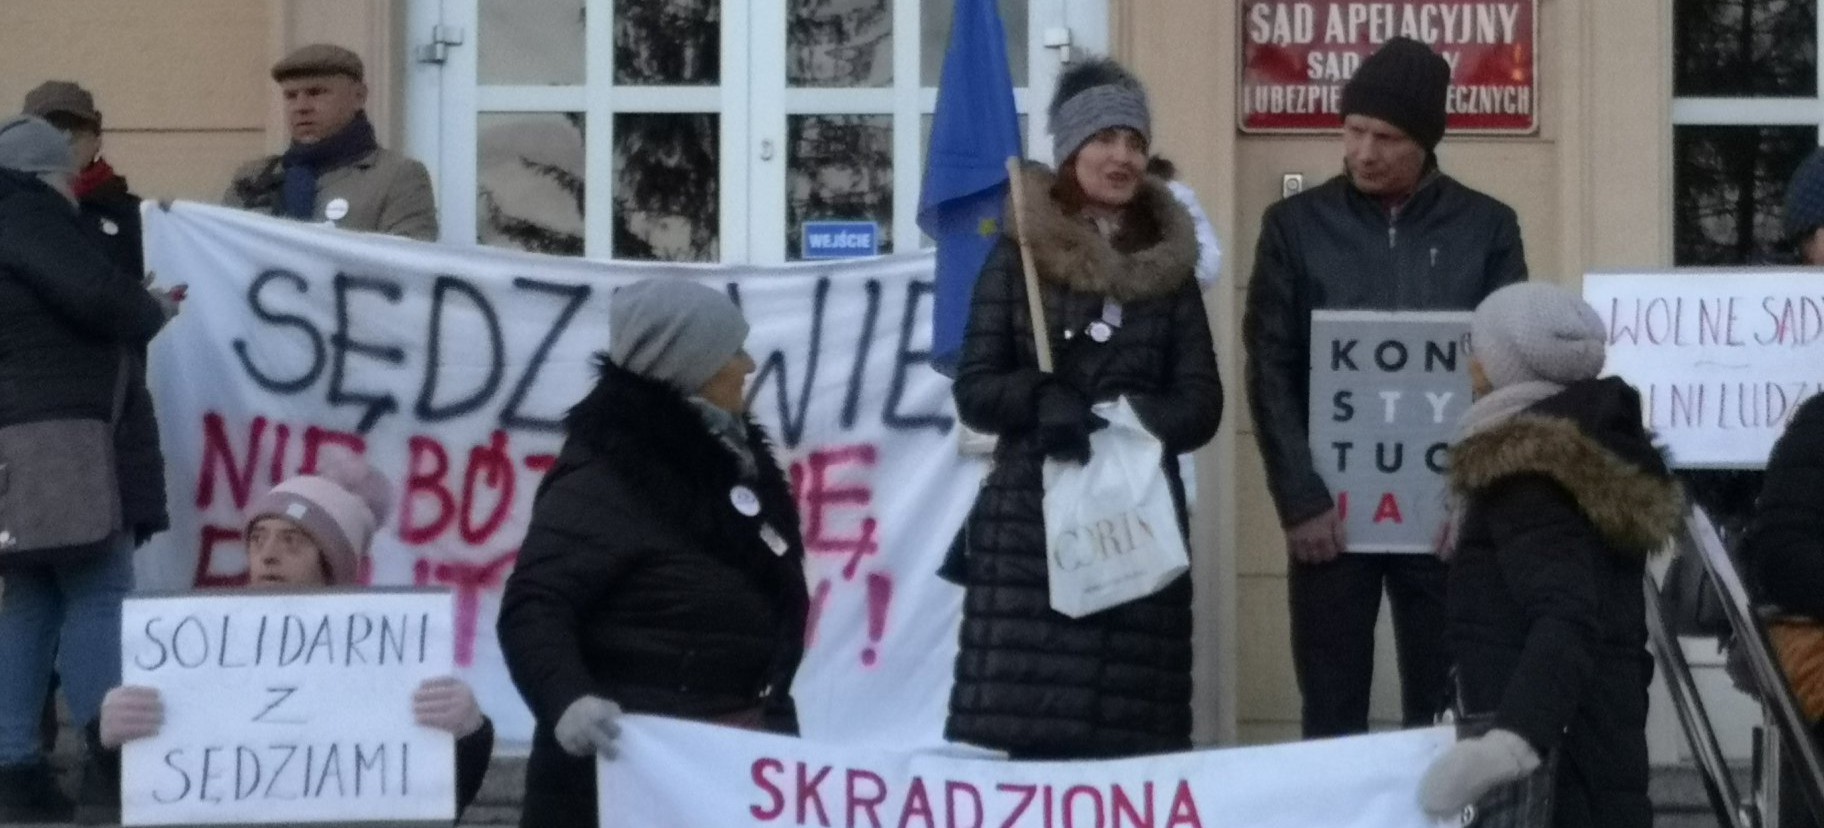 RZESZÓW: W środę KOD zaprotestuje “w obronie niezależności polskiego sądownictwa”